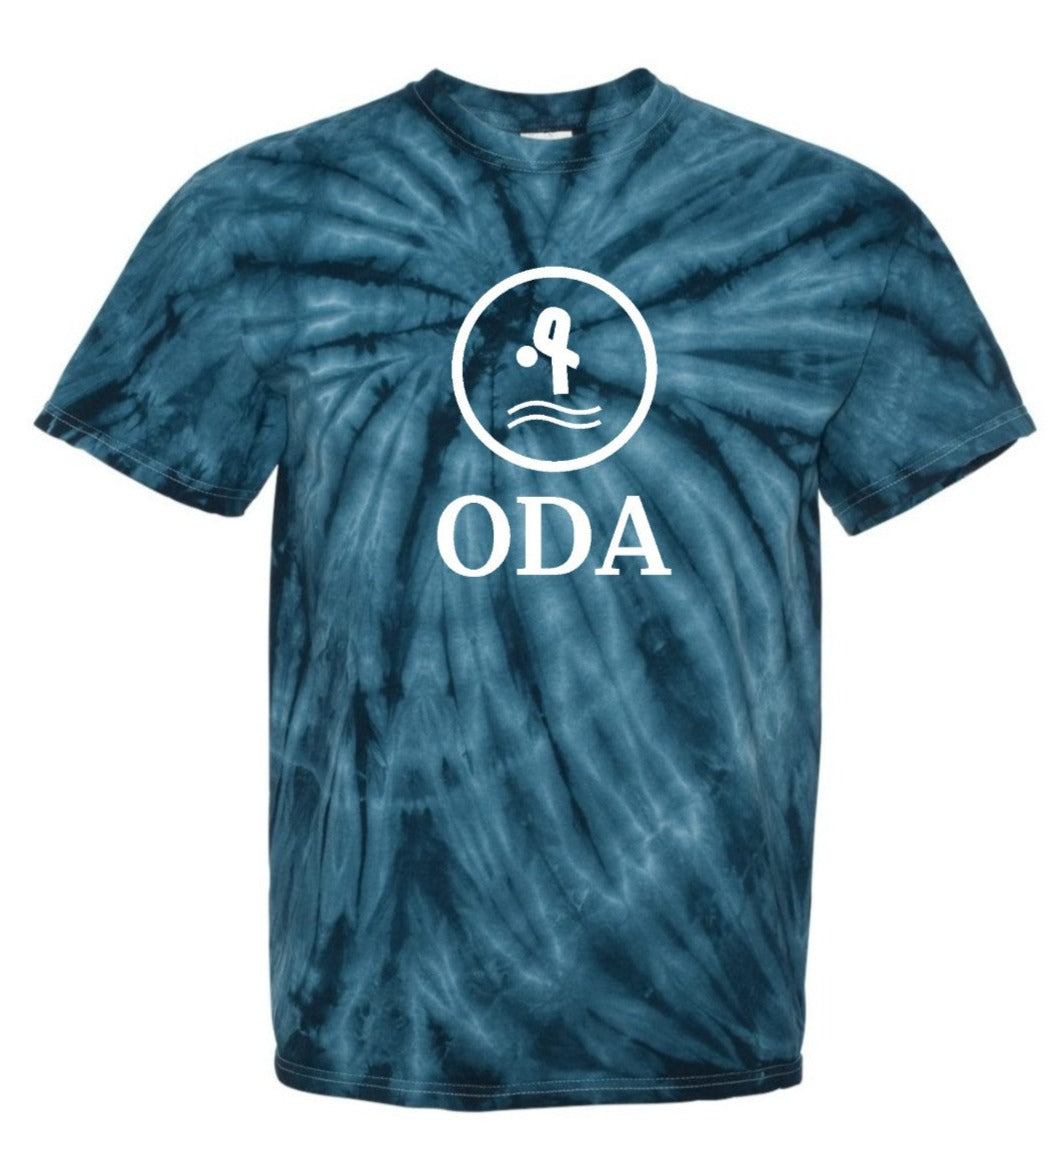 ODA Tie Dye Shirt